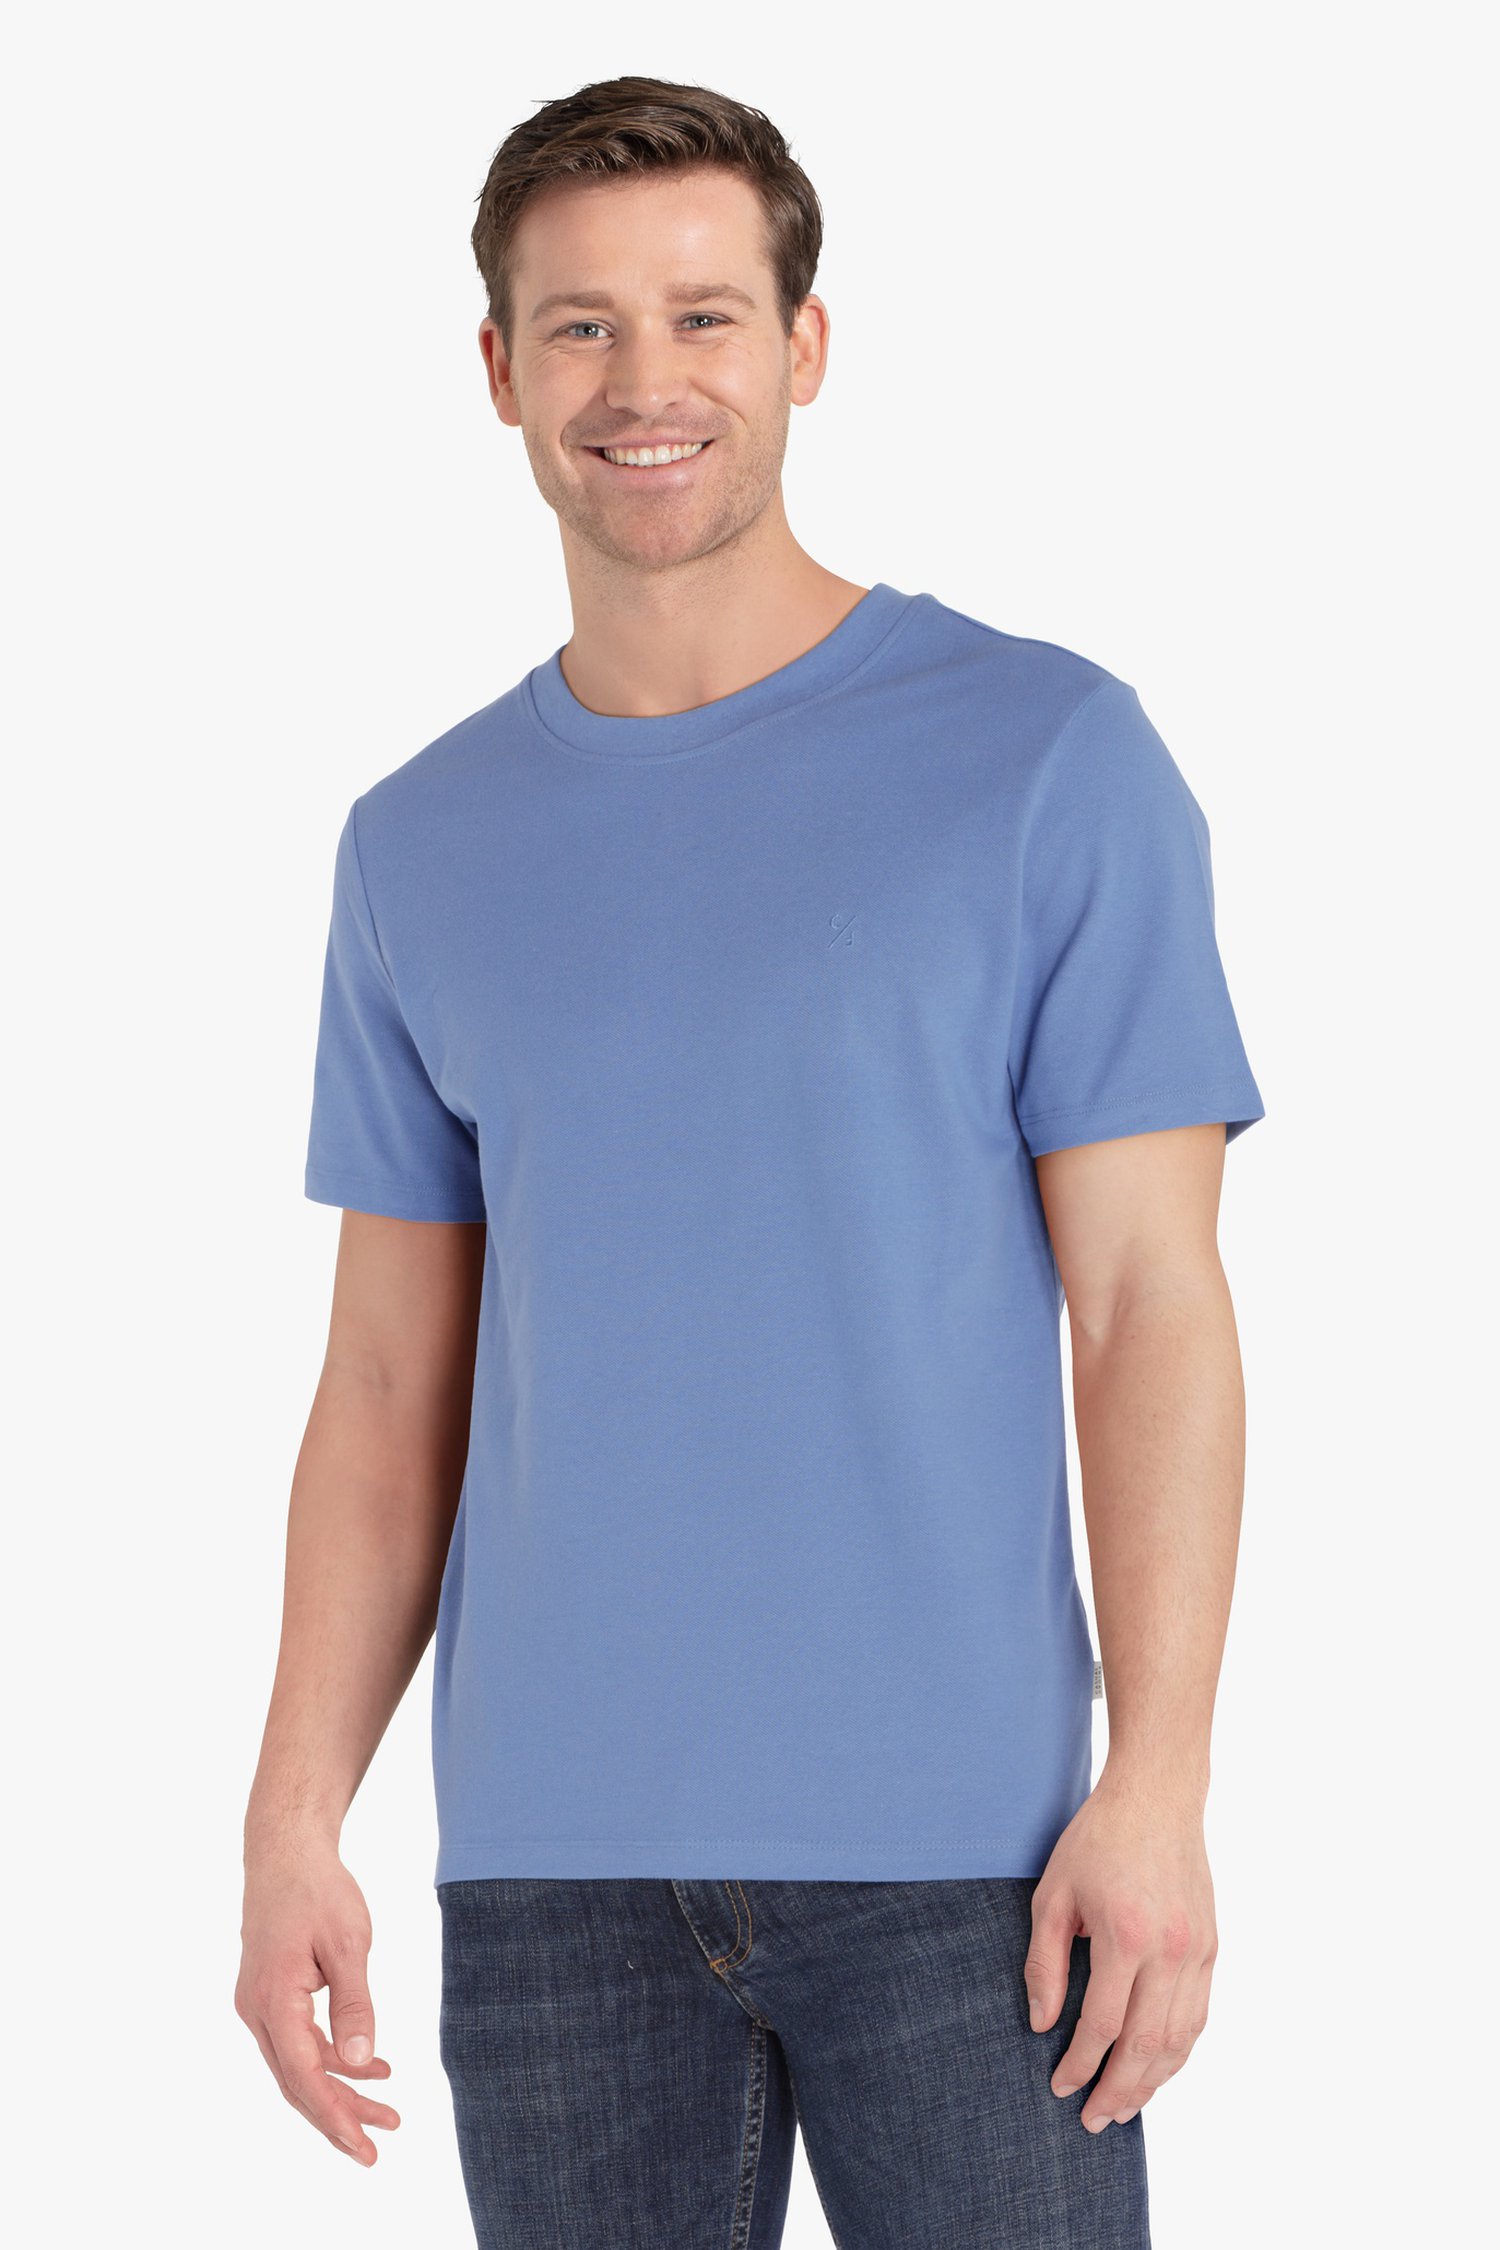 Lichtblauw T-shirt met ronde hals van Casual Friday voor Heren